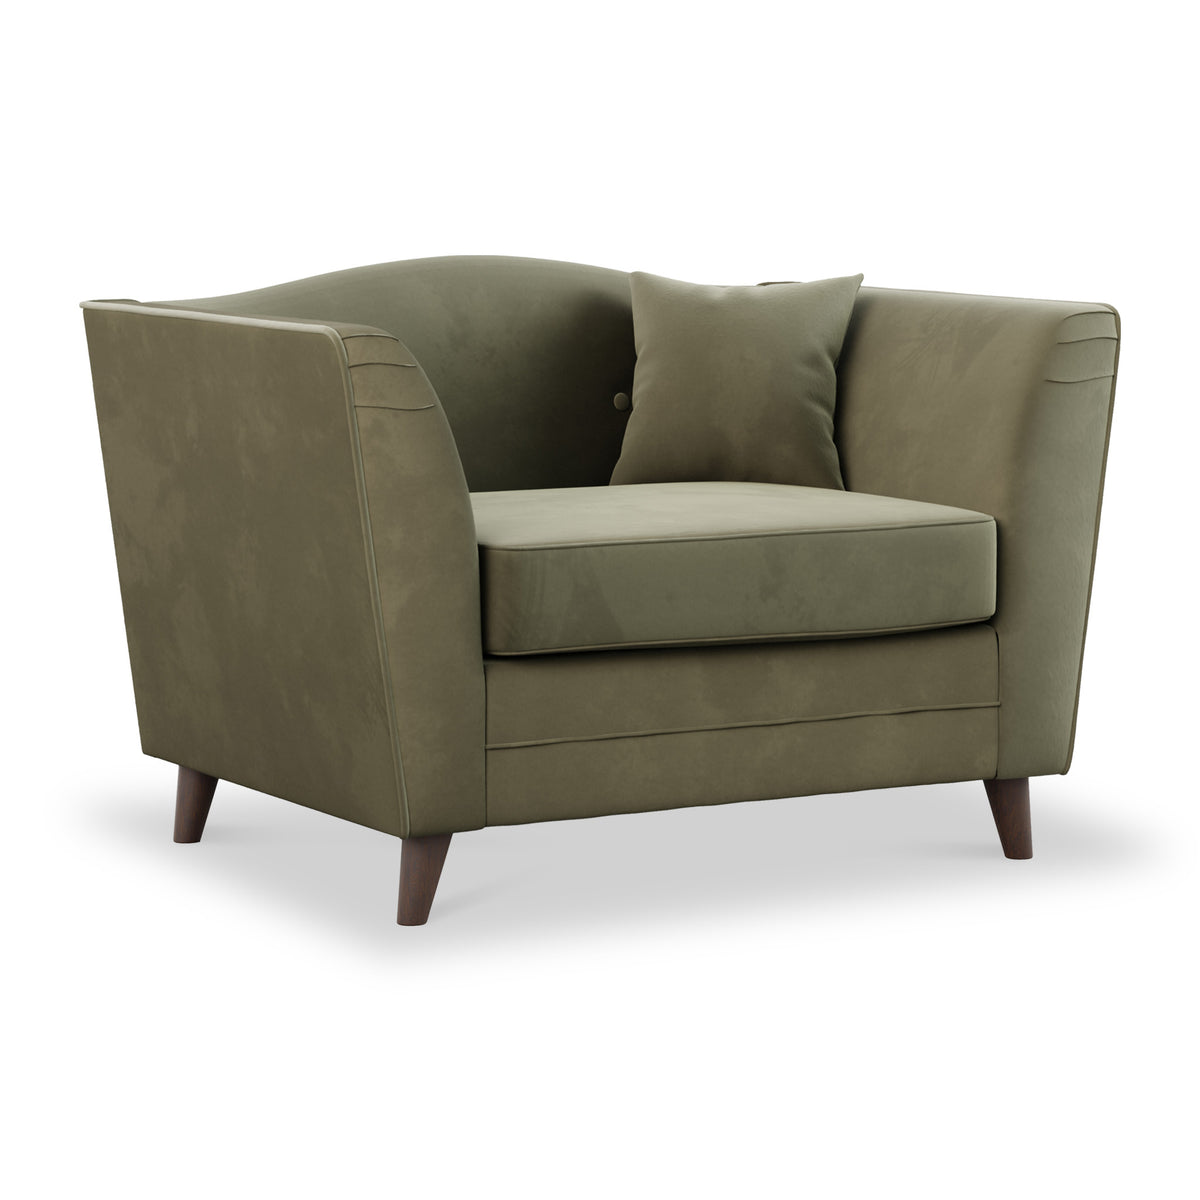 Pippa Fern Green Plush Velvet Snuggler Armchair from Roseland Furniture